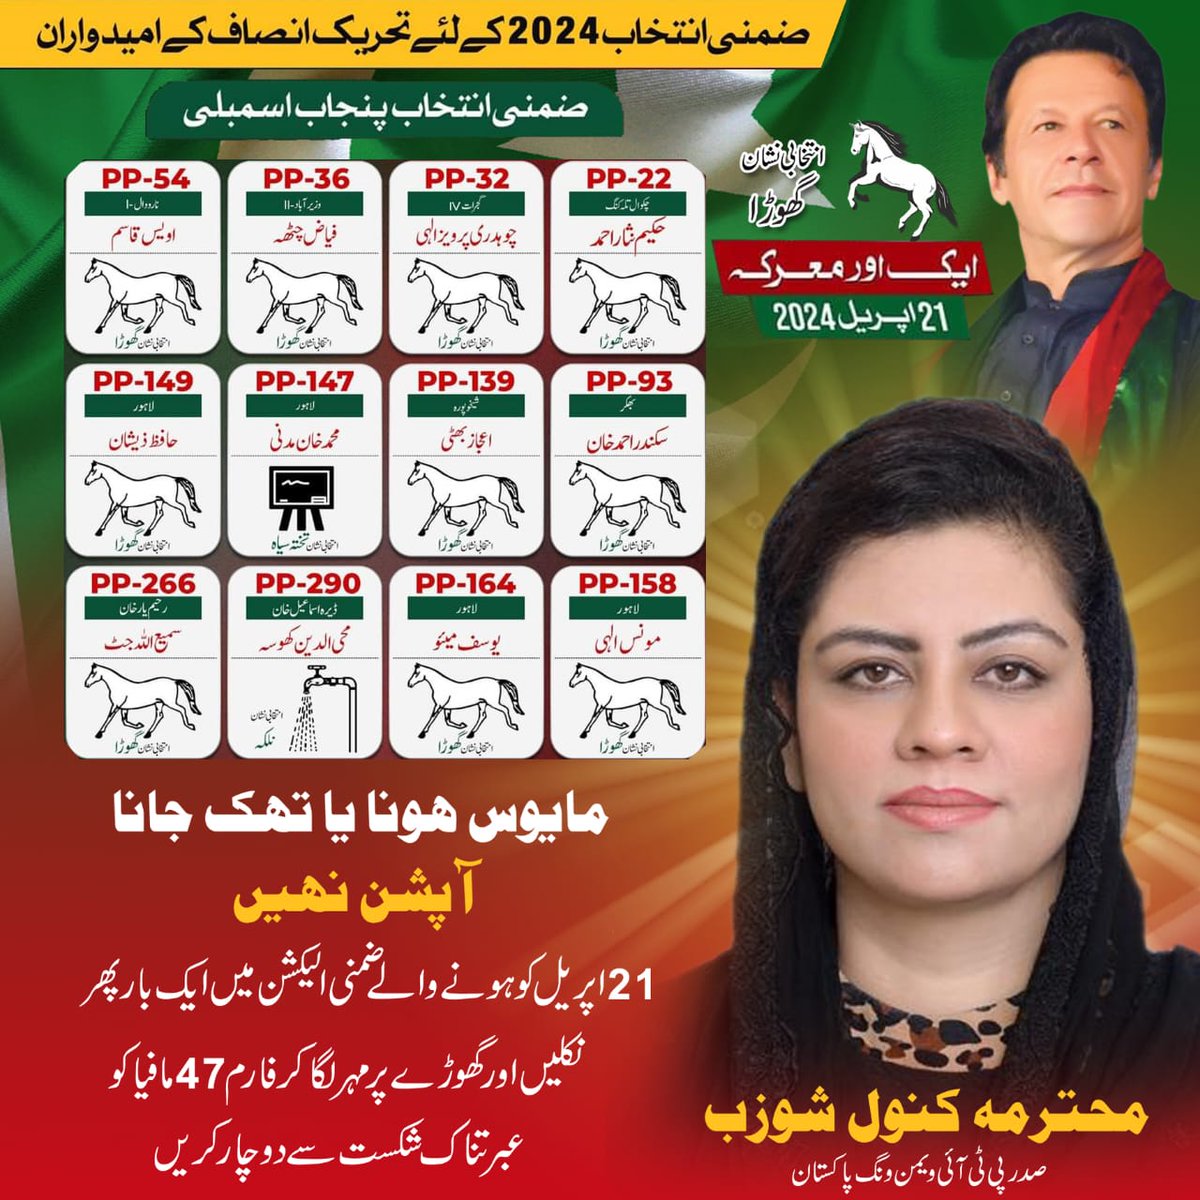 ووٹ ڈالنا اس لیے بھی ضروری ہے کہ آپ کا ووٹ عمران خان صاحب کی رہائی میں بھی اہم کردار ادا کرے گا کیونکہ نامعلوم افراد عمران خان صاحب کی عوامی حمایت کی وجہ سے اپنے ناپاک عزائم کو عملی جامہ پہنانے سے کترا رہے ہیں اس لیے ووٹ لازمی کاسٹ کریں شکریہ #ووٹ_عمران_خان_کا #ByElection